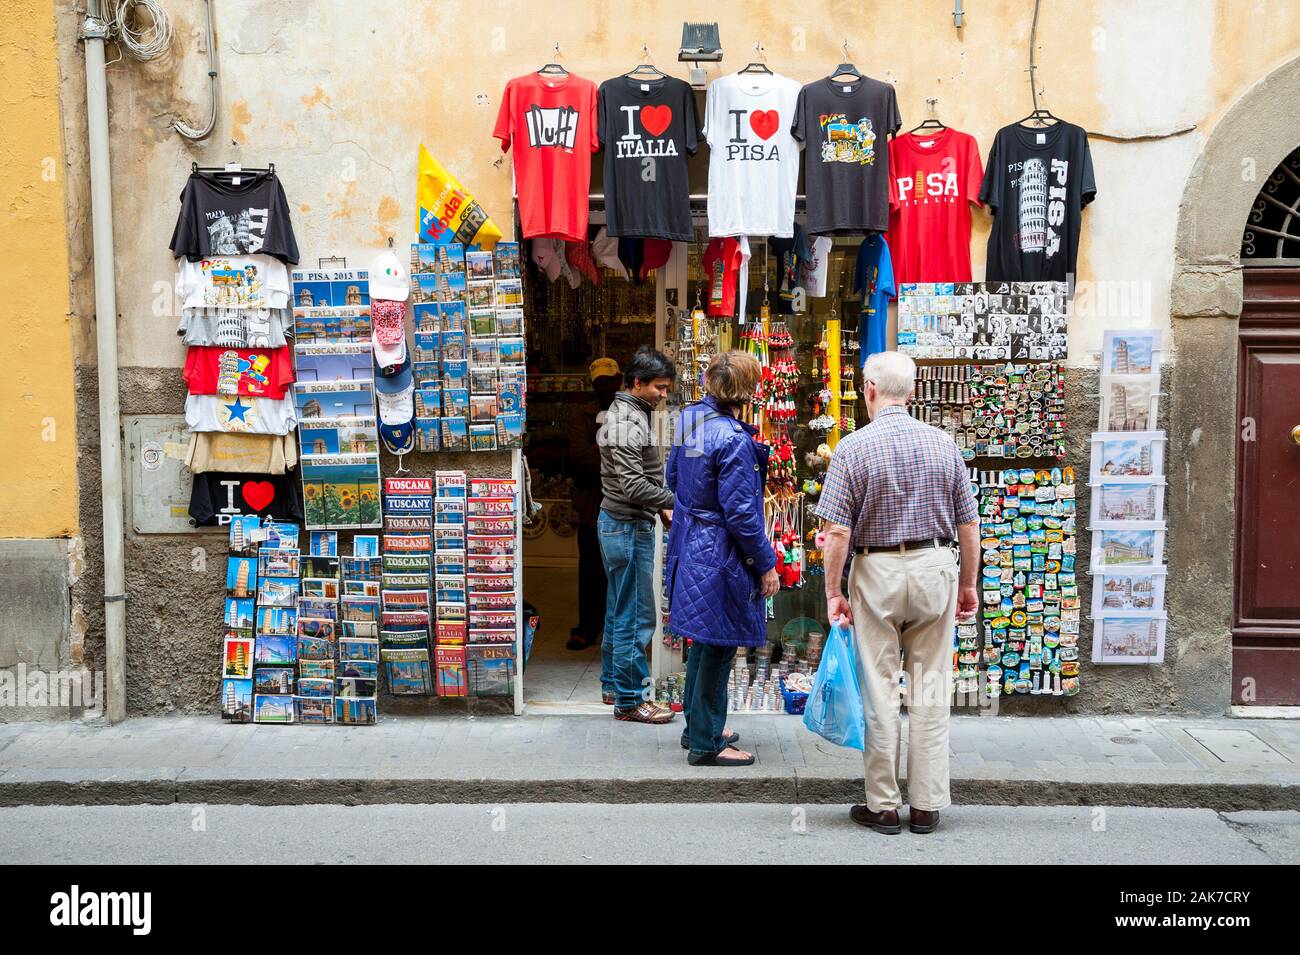 PISA, Italien - 23. MAI 2012: Touristen durchsuchen Souvenir stand Verkauf von T-Shirts und Schmuckstücke auf einer Straße, die zu den Schiefen Turm. Stockfoto